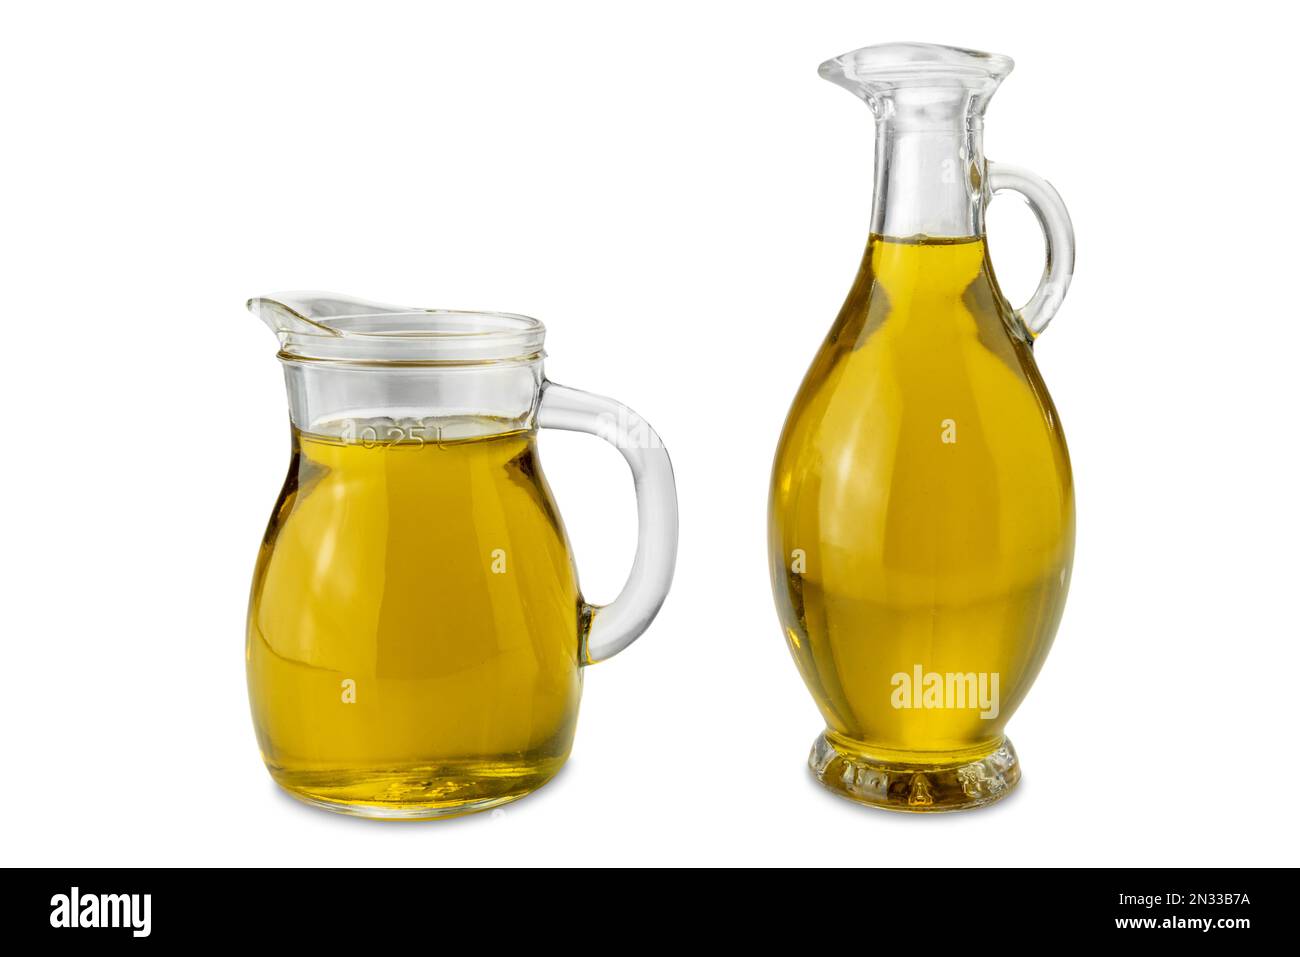 Aceite de oliva virgen extra en jarra de vidrio de 250 ml y en cruet de vidrio de estilo egipcio aislado en blanco con ruta de recorte Foto de stock